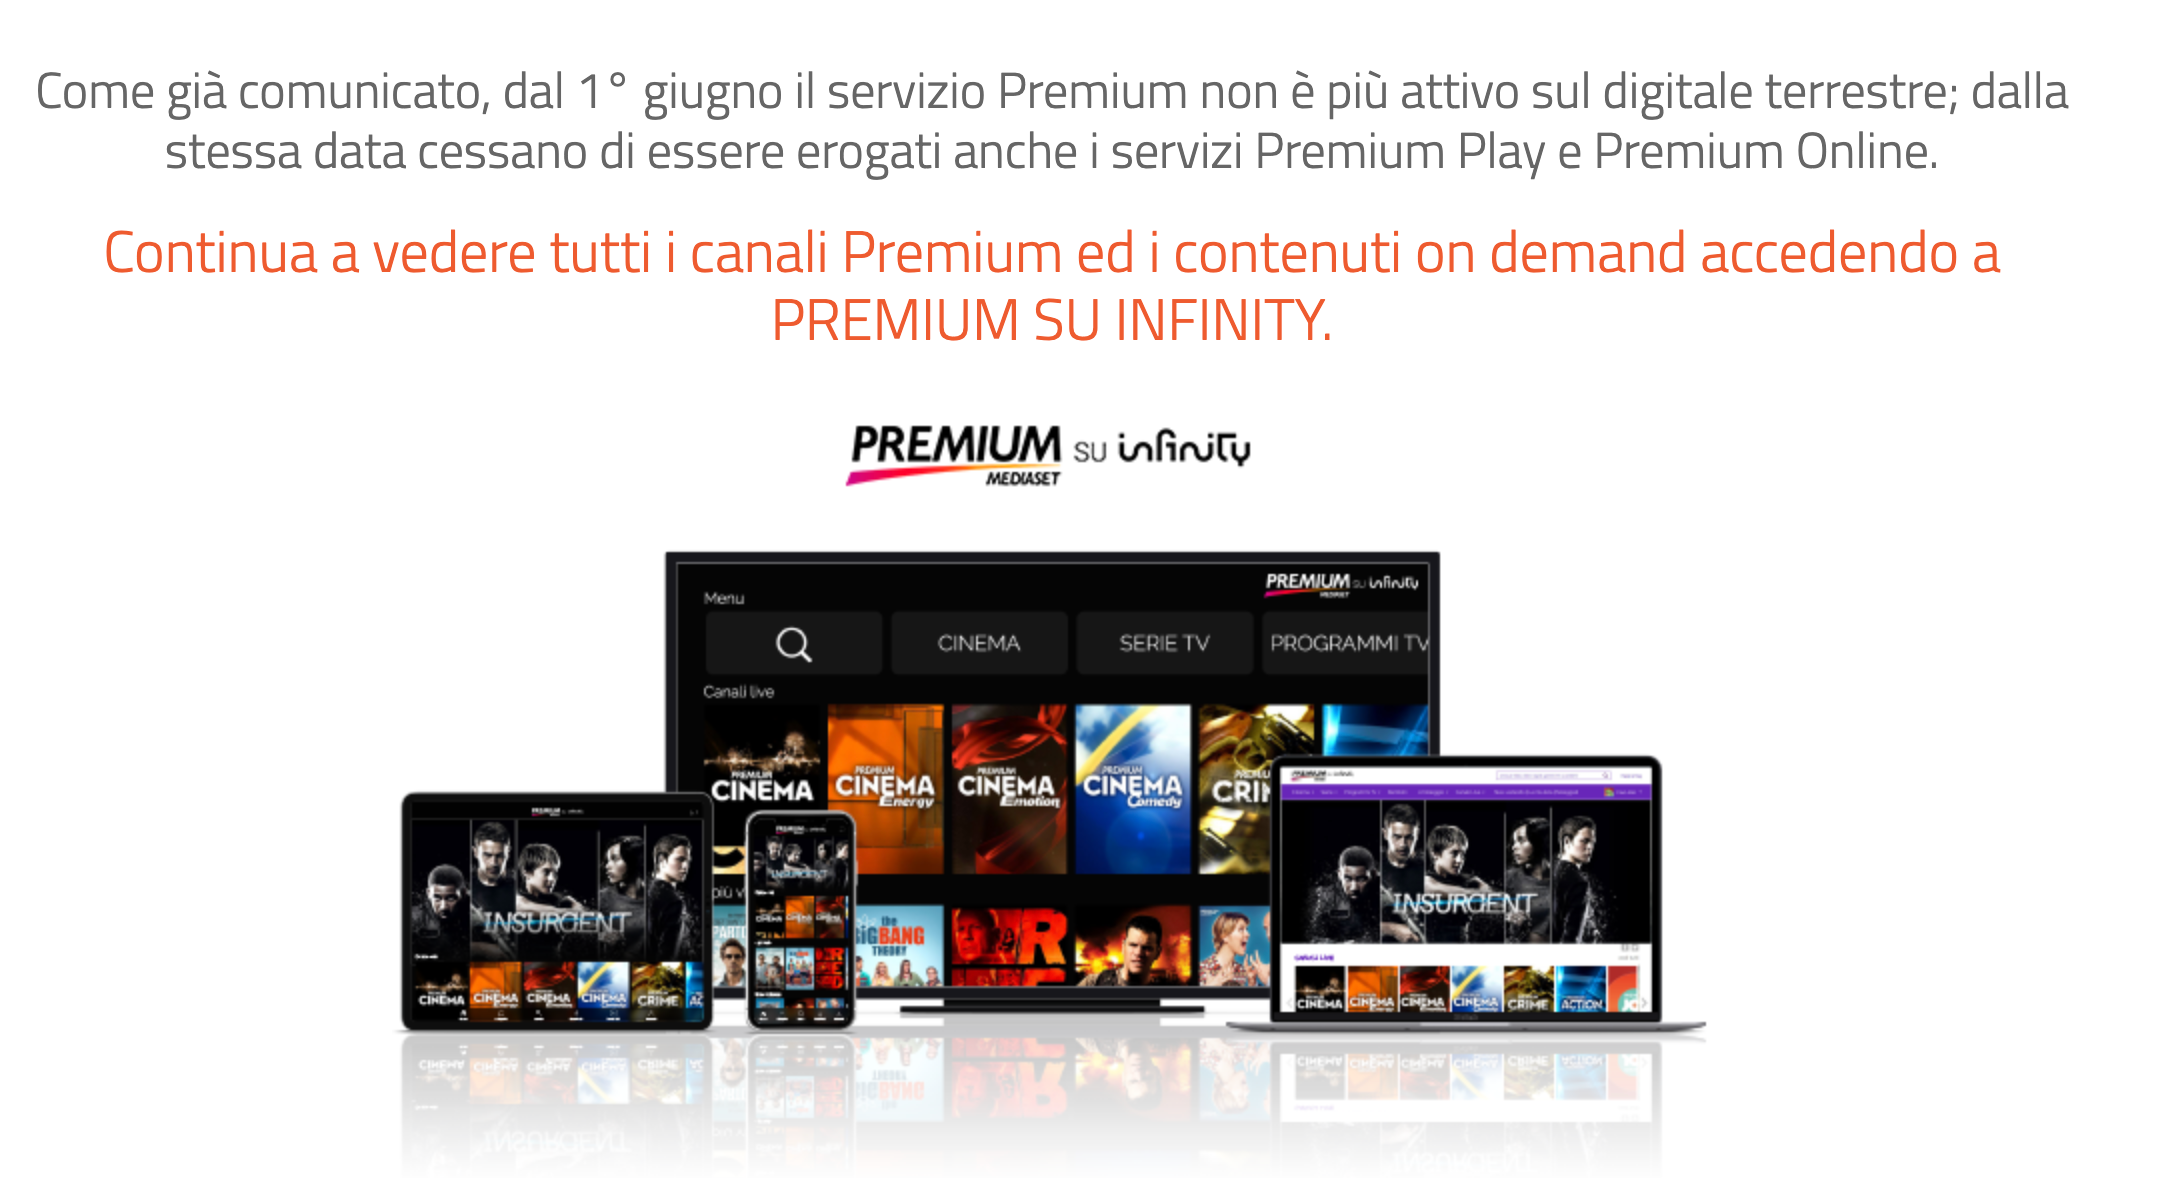 Mediaset premium non è attivo sul digitale terrestre